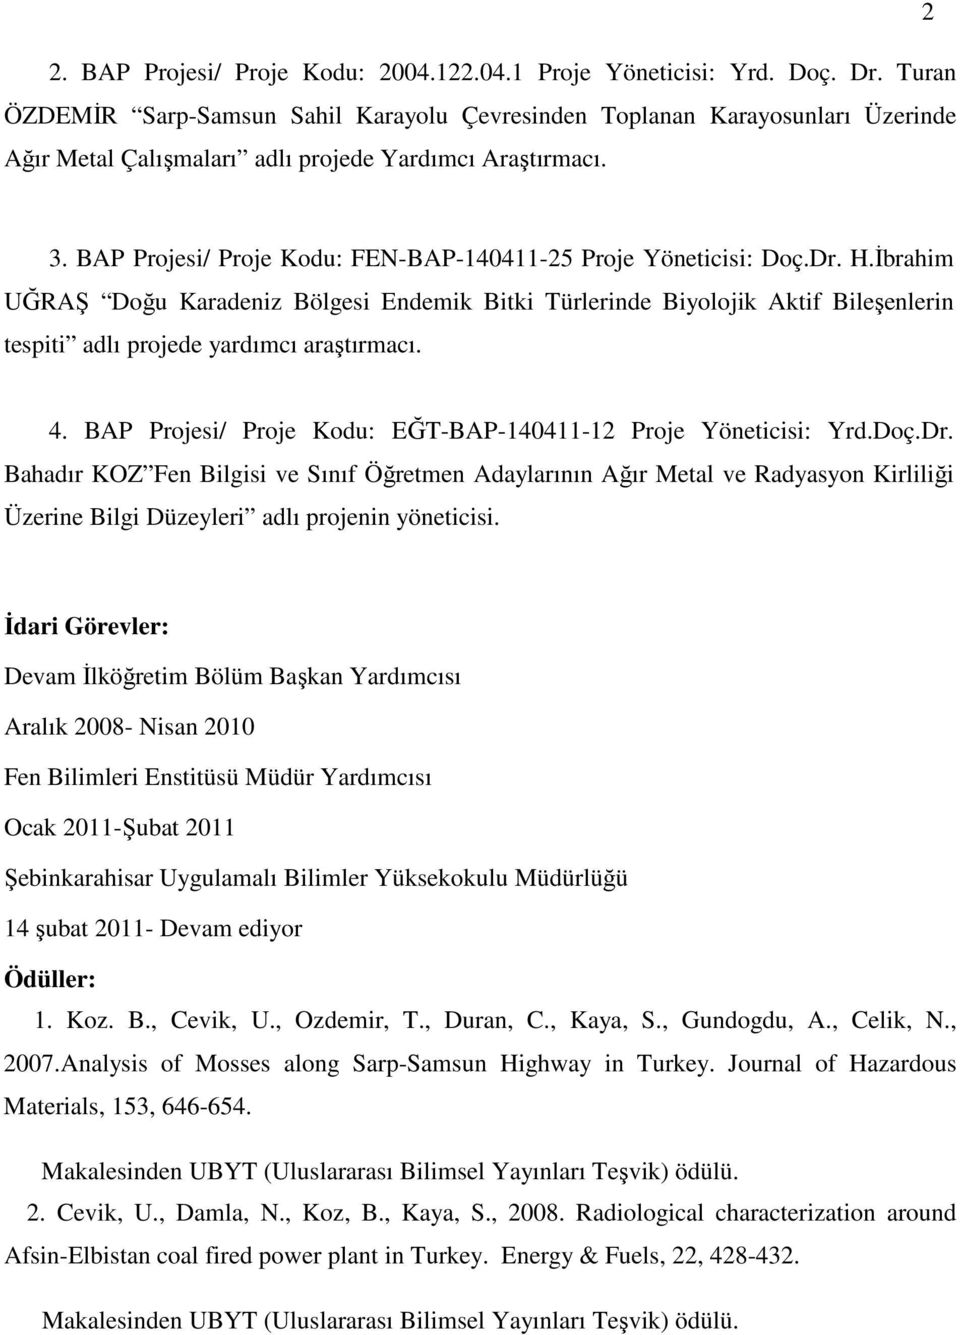 BAP Projesi/ Proje Kodu: FEN-BAP-140411-25 Proje Yöneticisi: Doç.Dr. H.